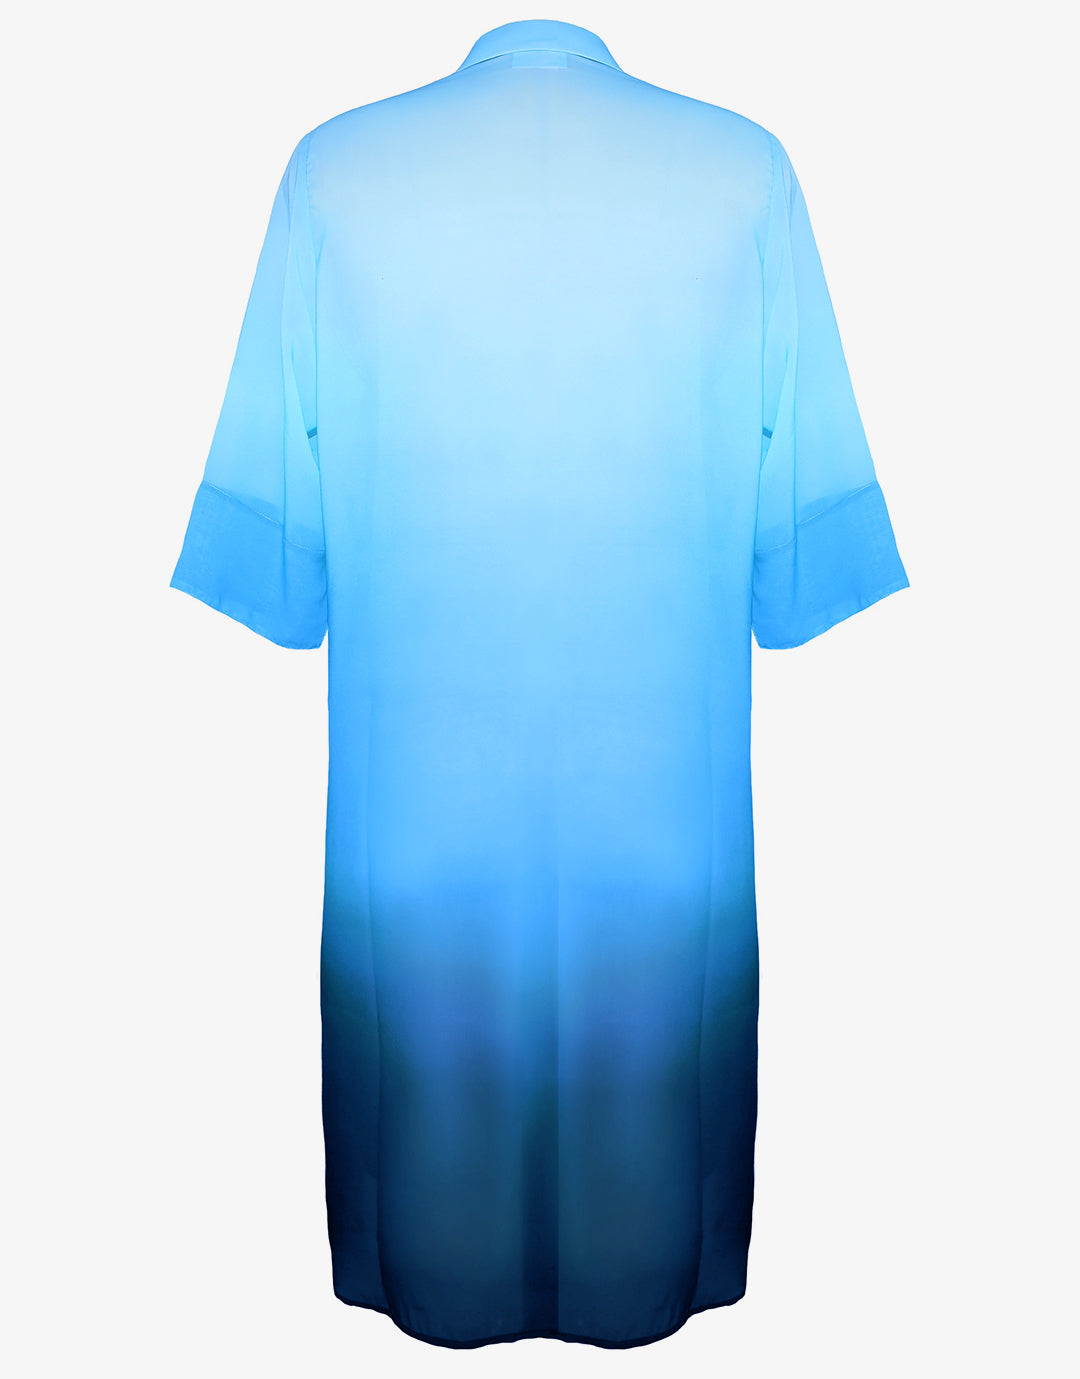 Brasil Beach Shirt - Blue Ombre - Simply Beach UK